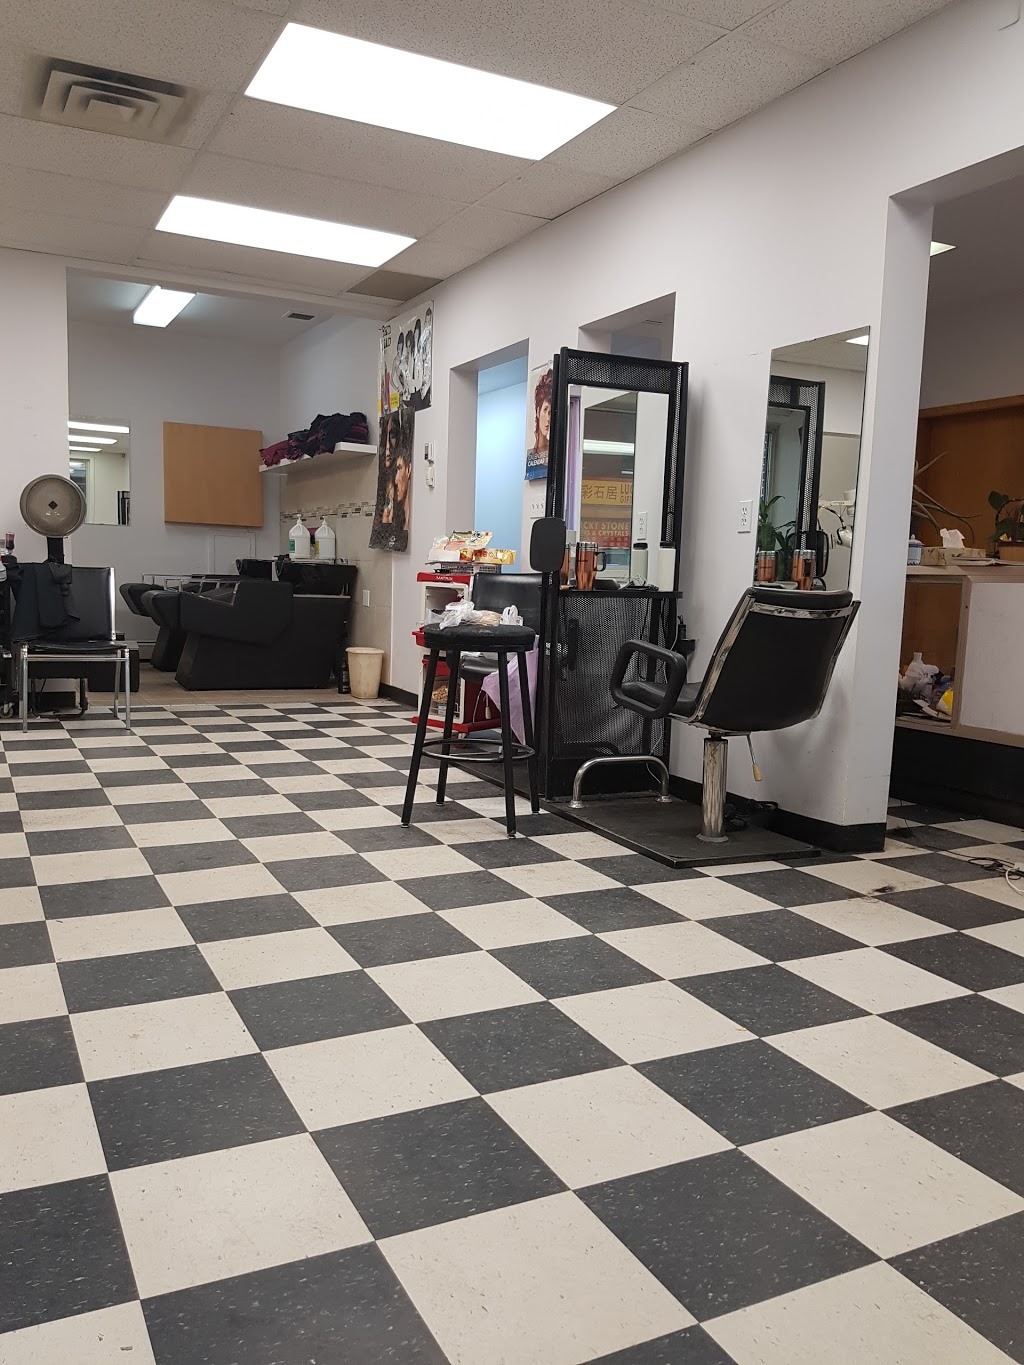 New Oscar Beauty Salon | hair care | 10538 97 St NW, Edmonton, AB T5H 2L4, Canada | 7804292288 OR +1 780-429-2288